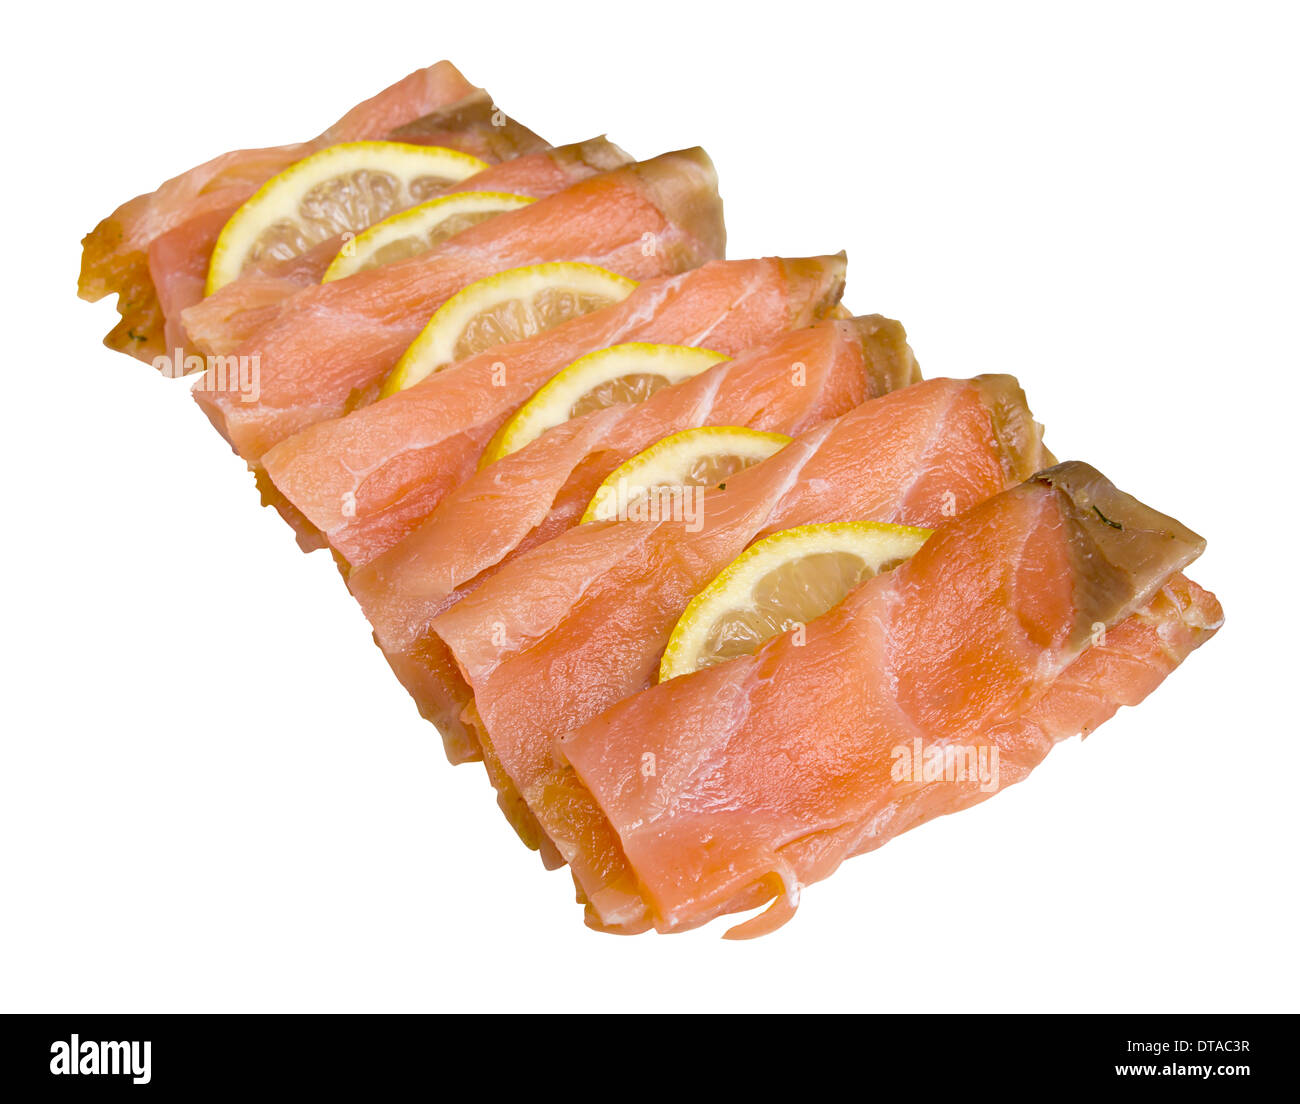 Tranches de saumon fumé et organisées avec les tranches de citron isolé sur fond blanc Banque D'Images